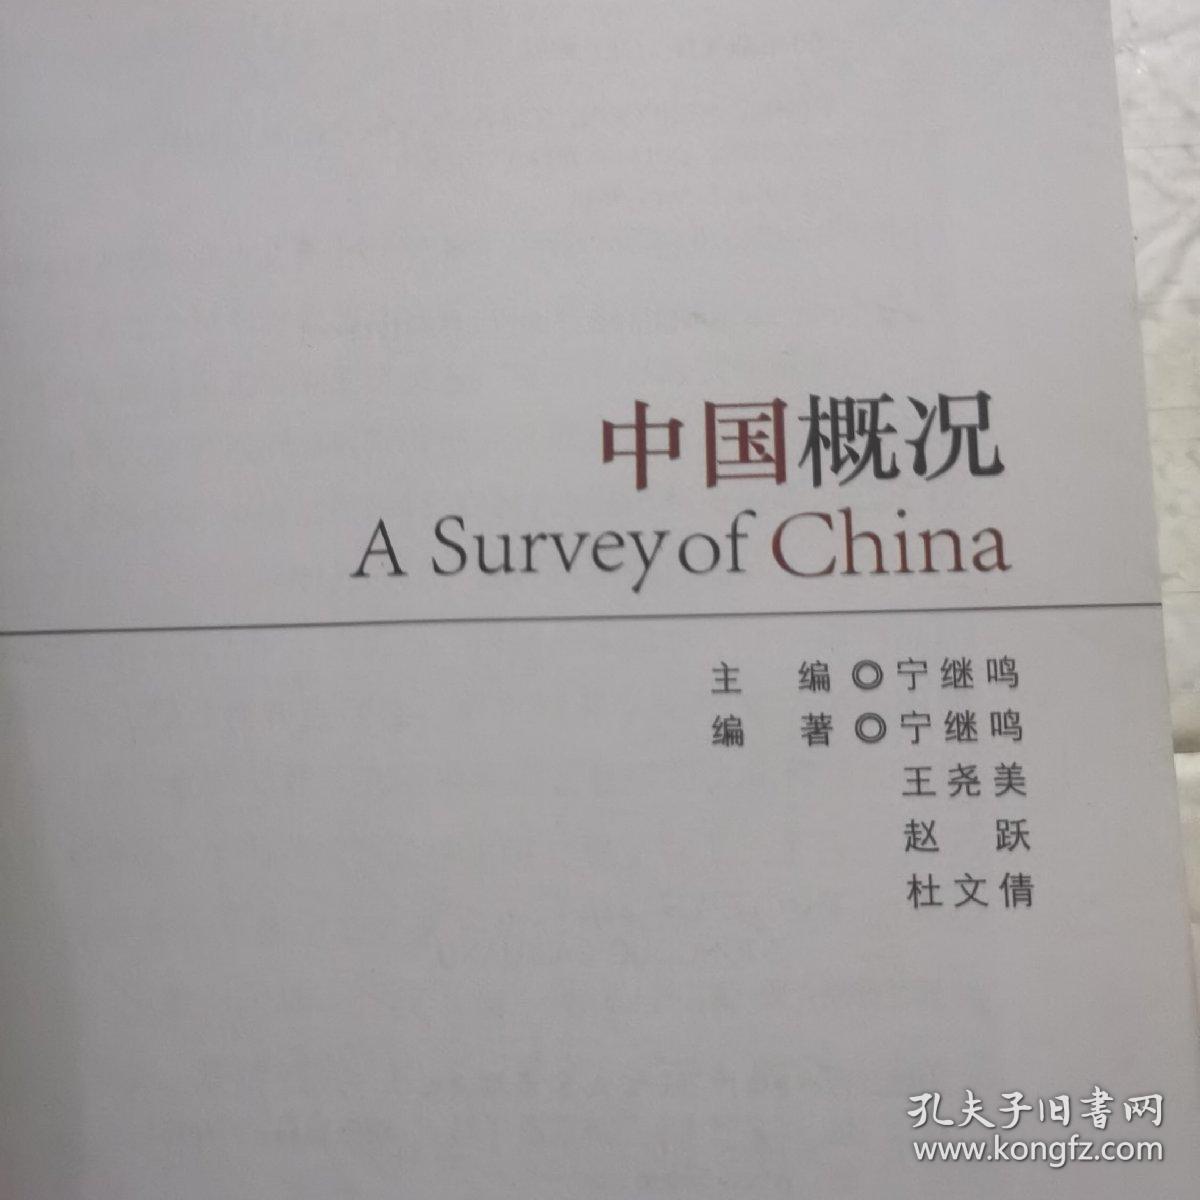 来华留学生专业汉语学习丛书·必读课系列：中国概况